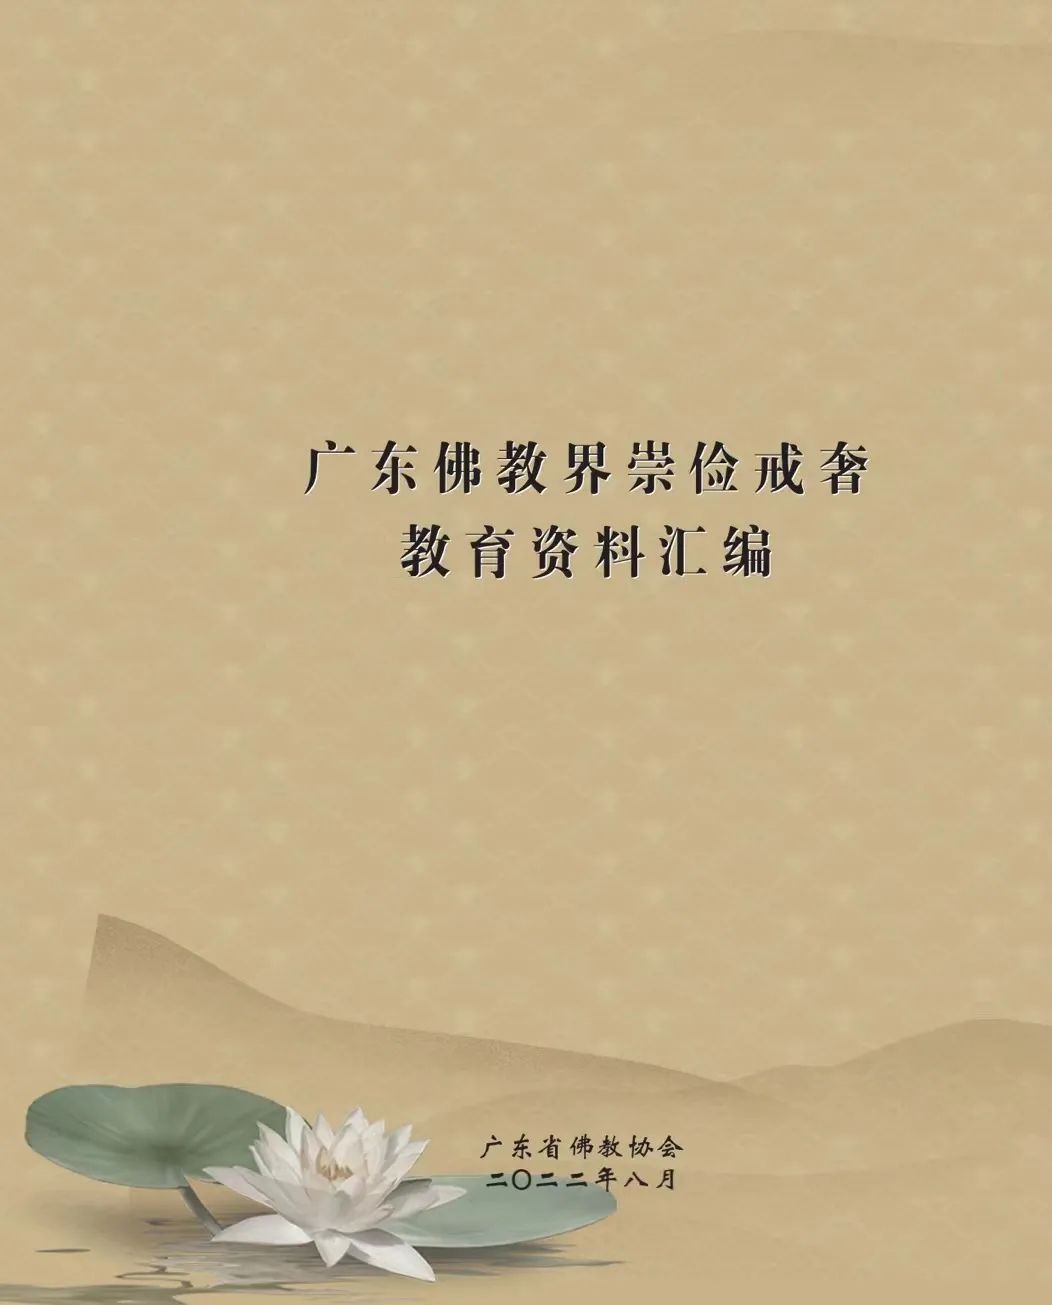 《广东佛教界崇俭戒奢教育资料汇编》刊印 共七个章节